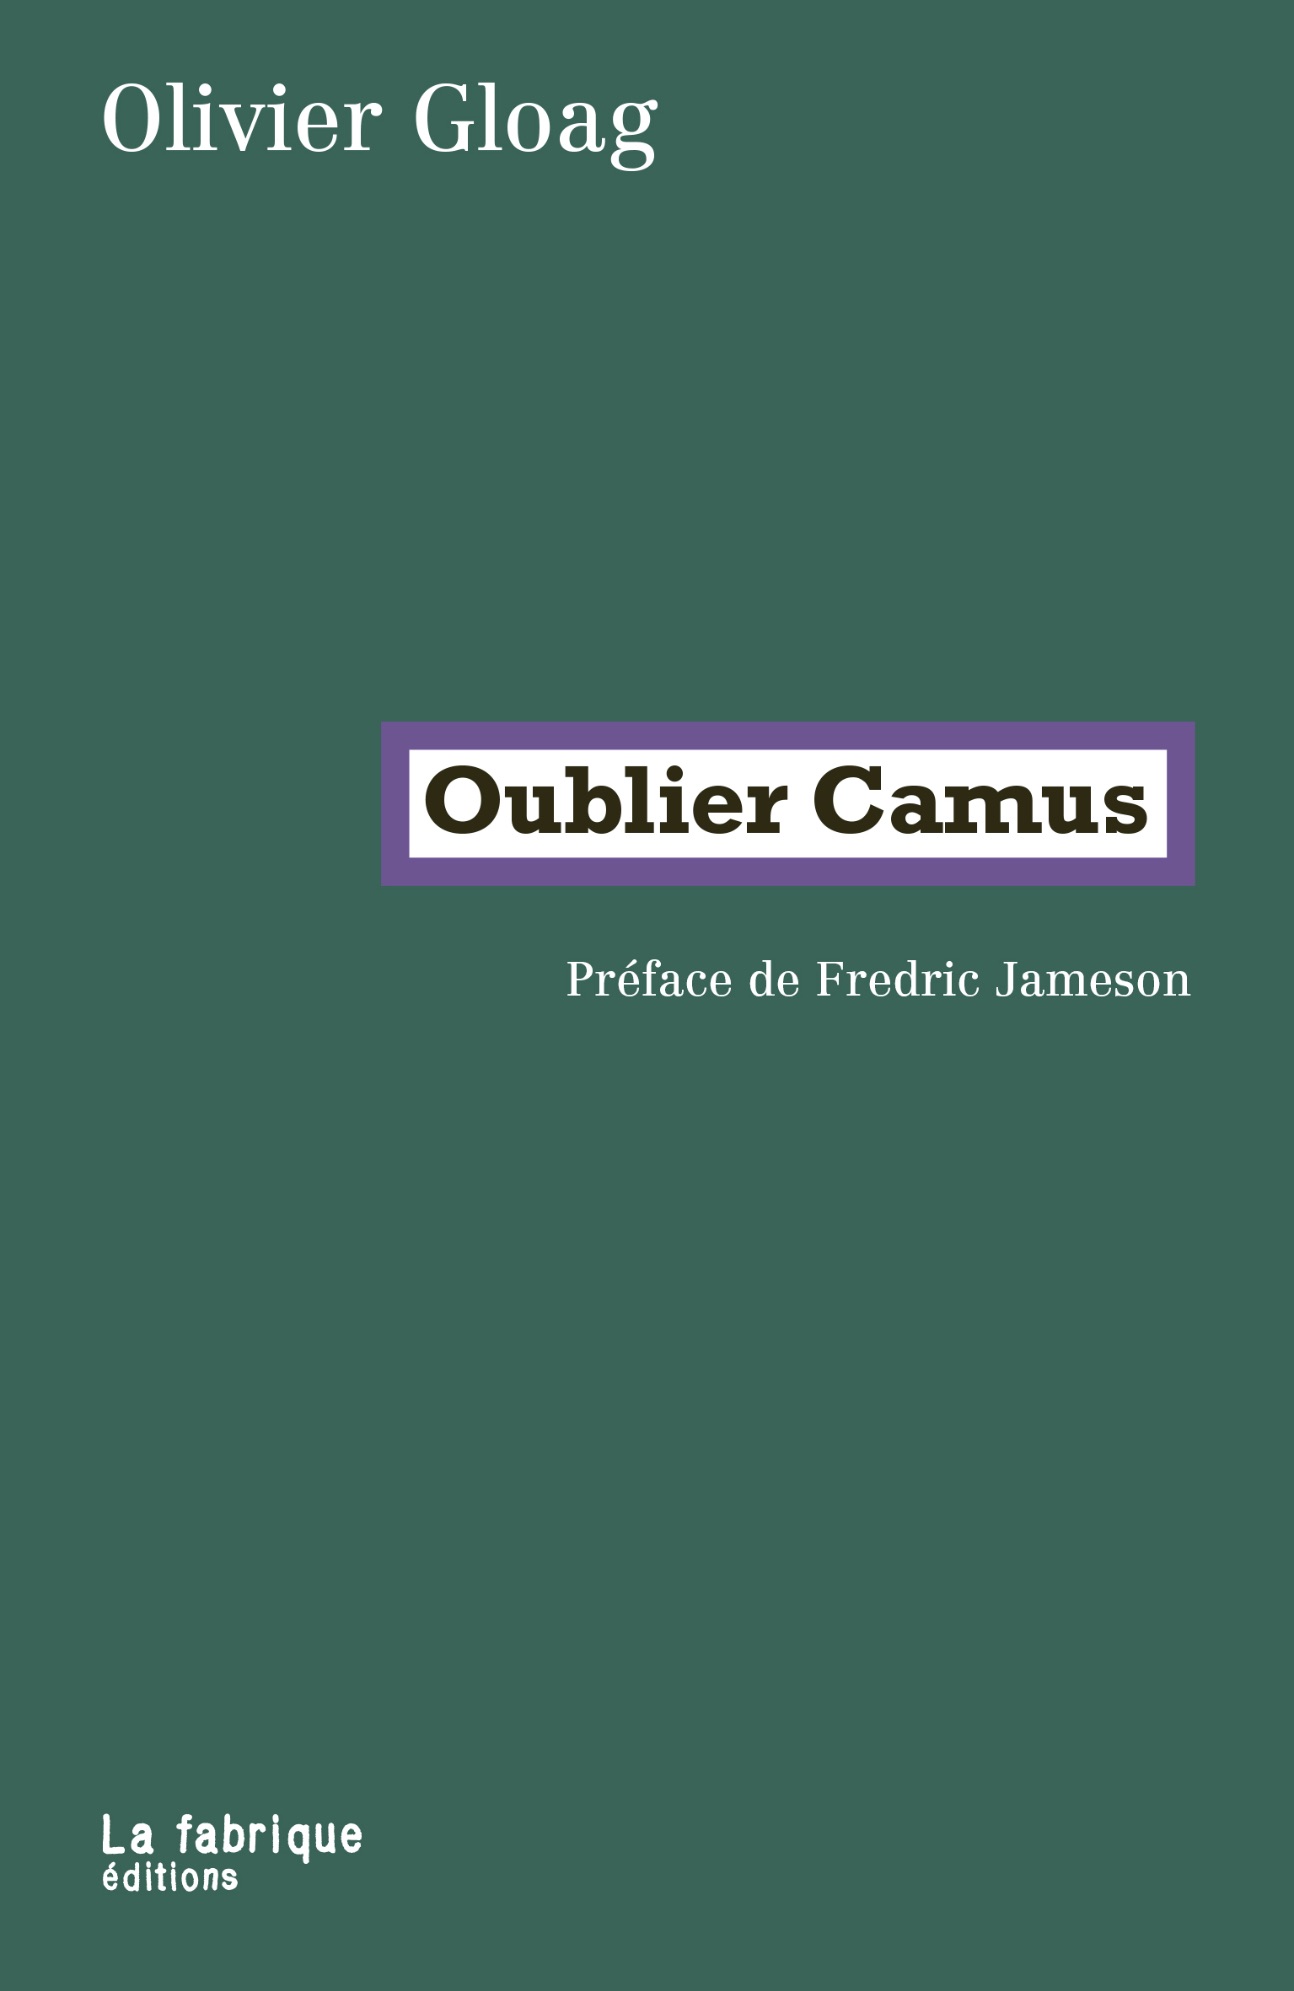 Olivier Gloag, Oublier Camus (préface de F. Jameson)